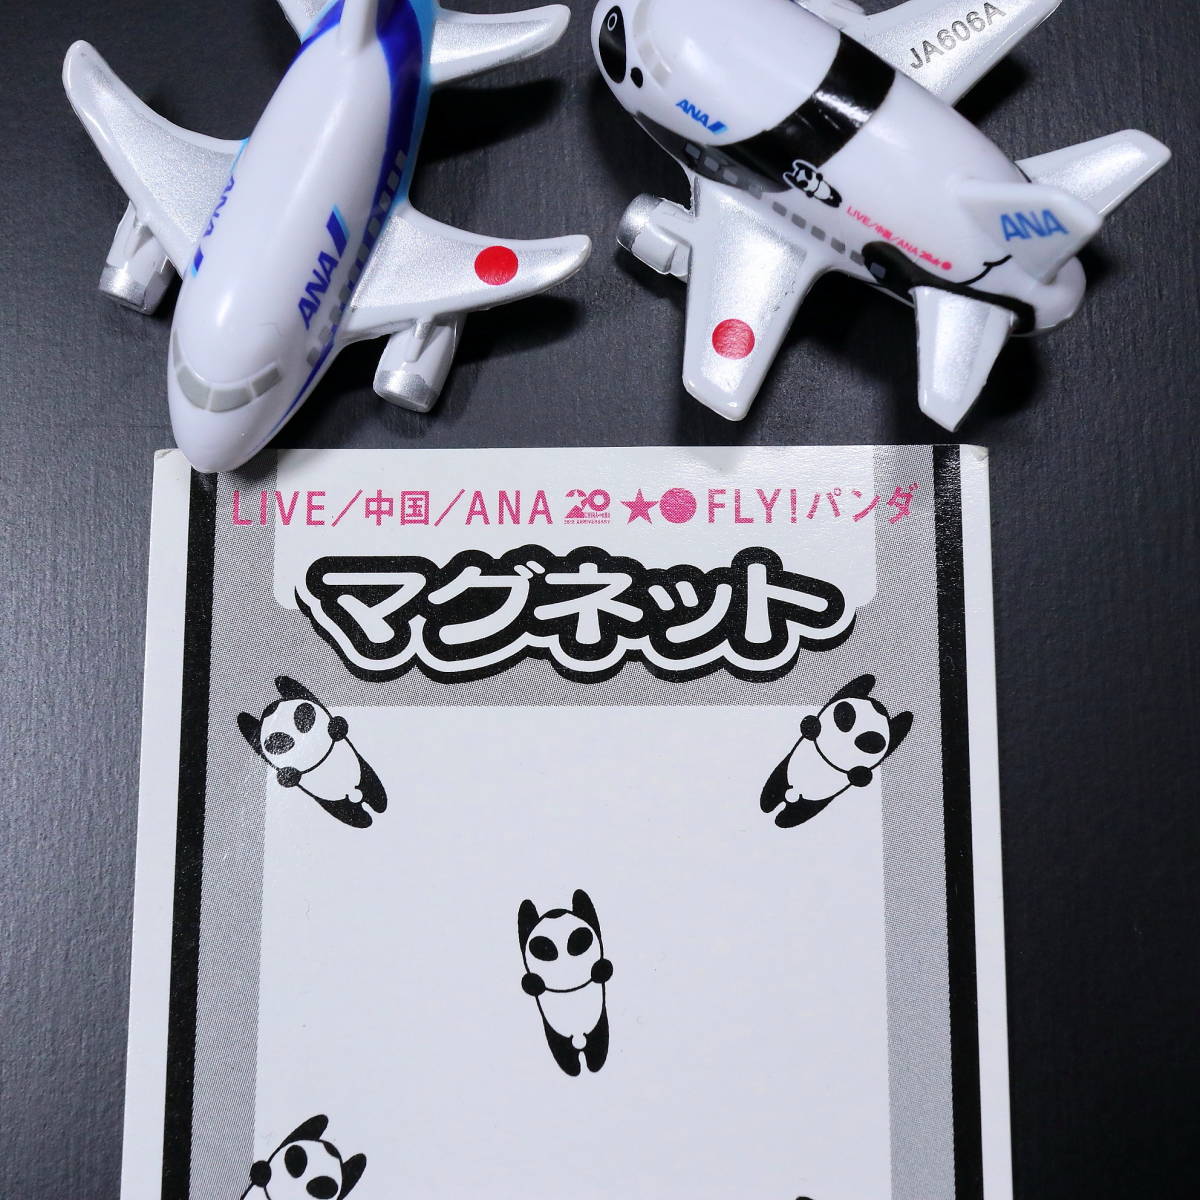 *ANA* Panda магнит China линия ..20 anniversary commemoration специальный покраска машина FLY! Panda * все день пустой не продается самолет самолет эмблема 